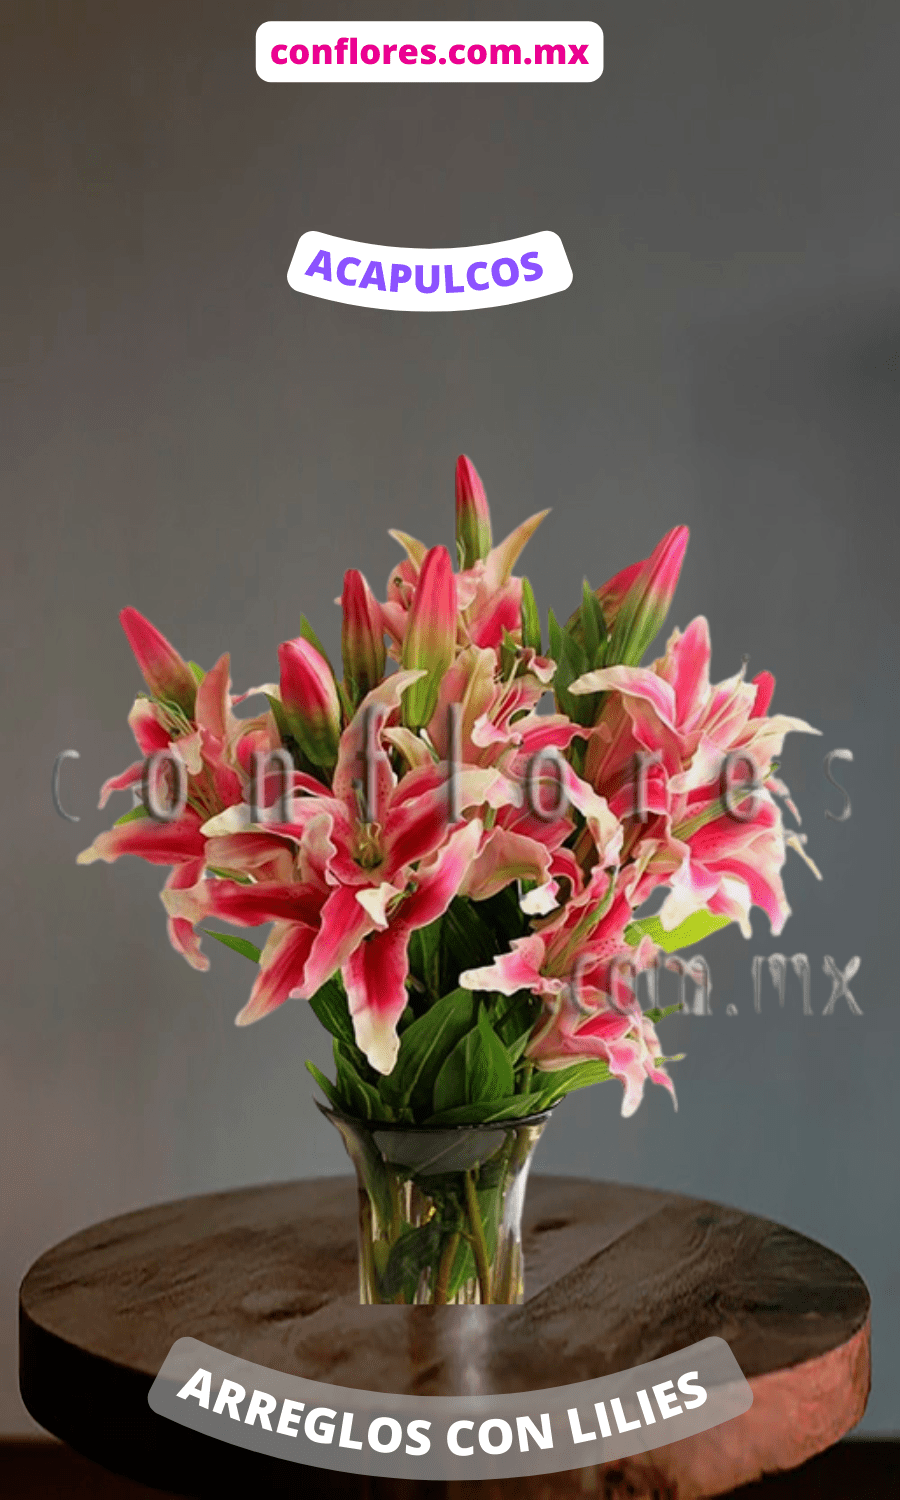 Arreglo de Lilies Tu Esencia - Florería conflores